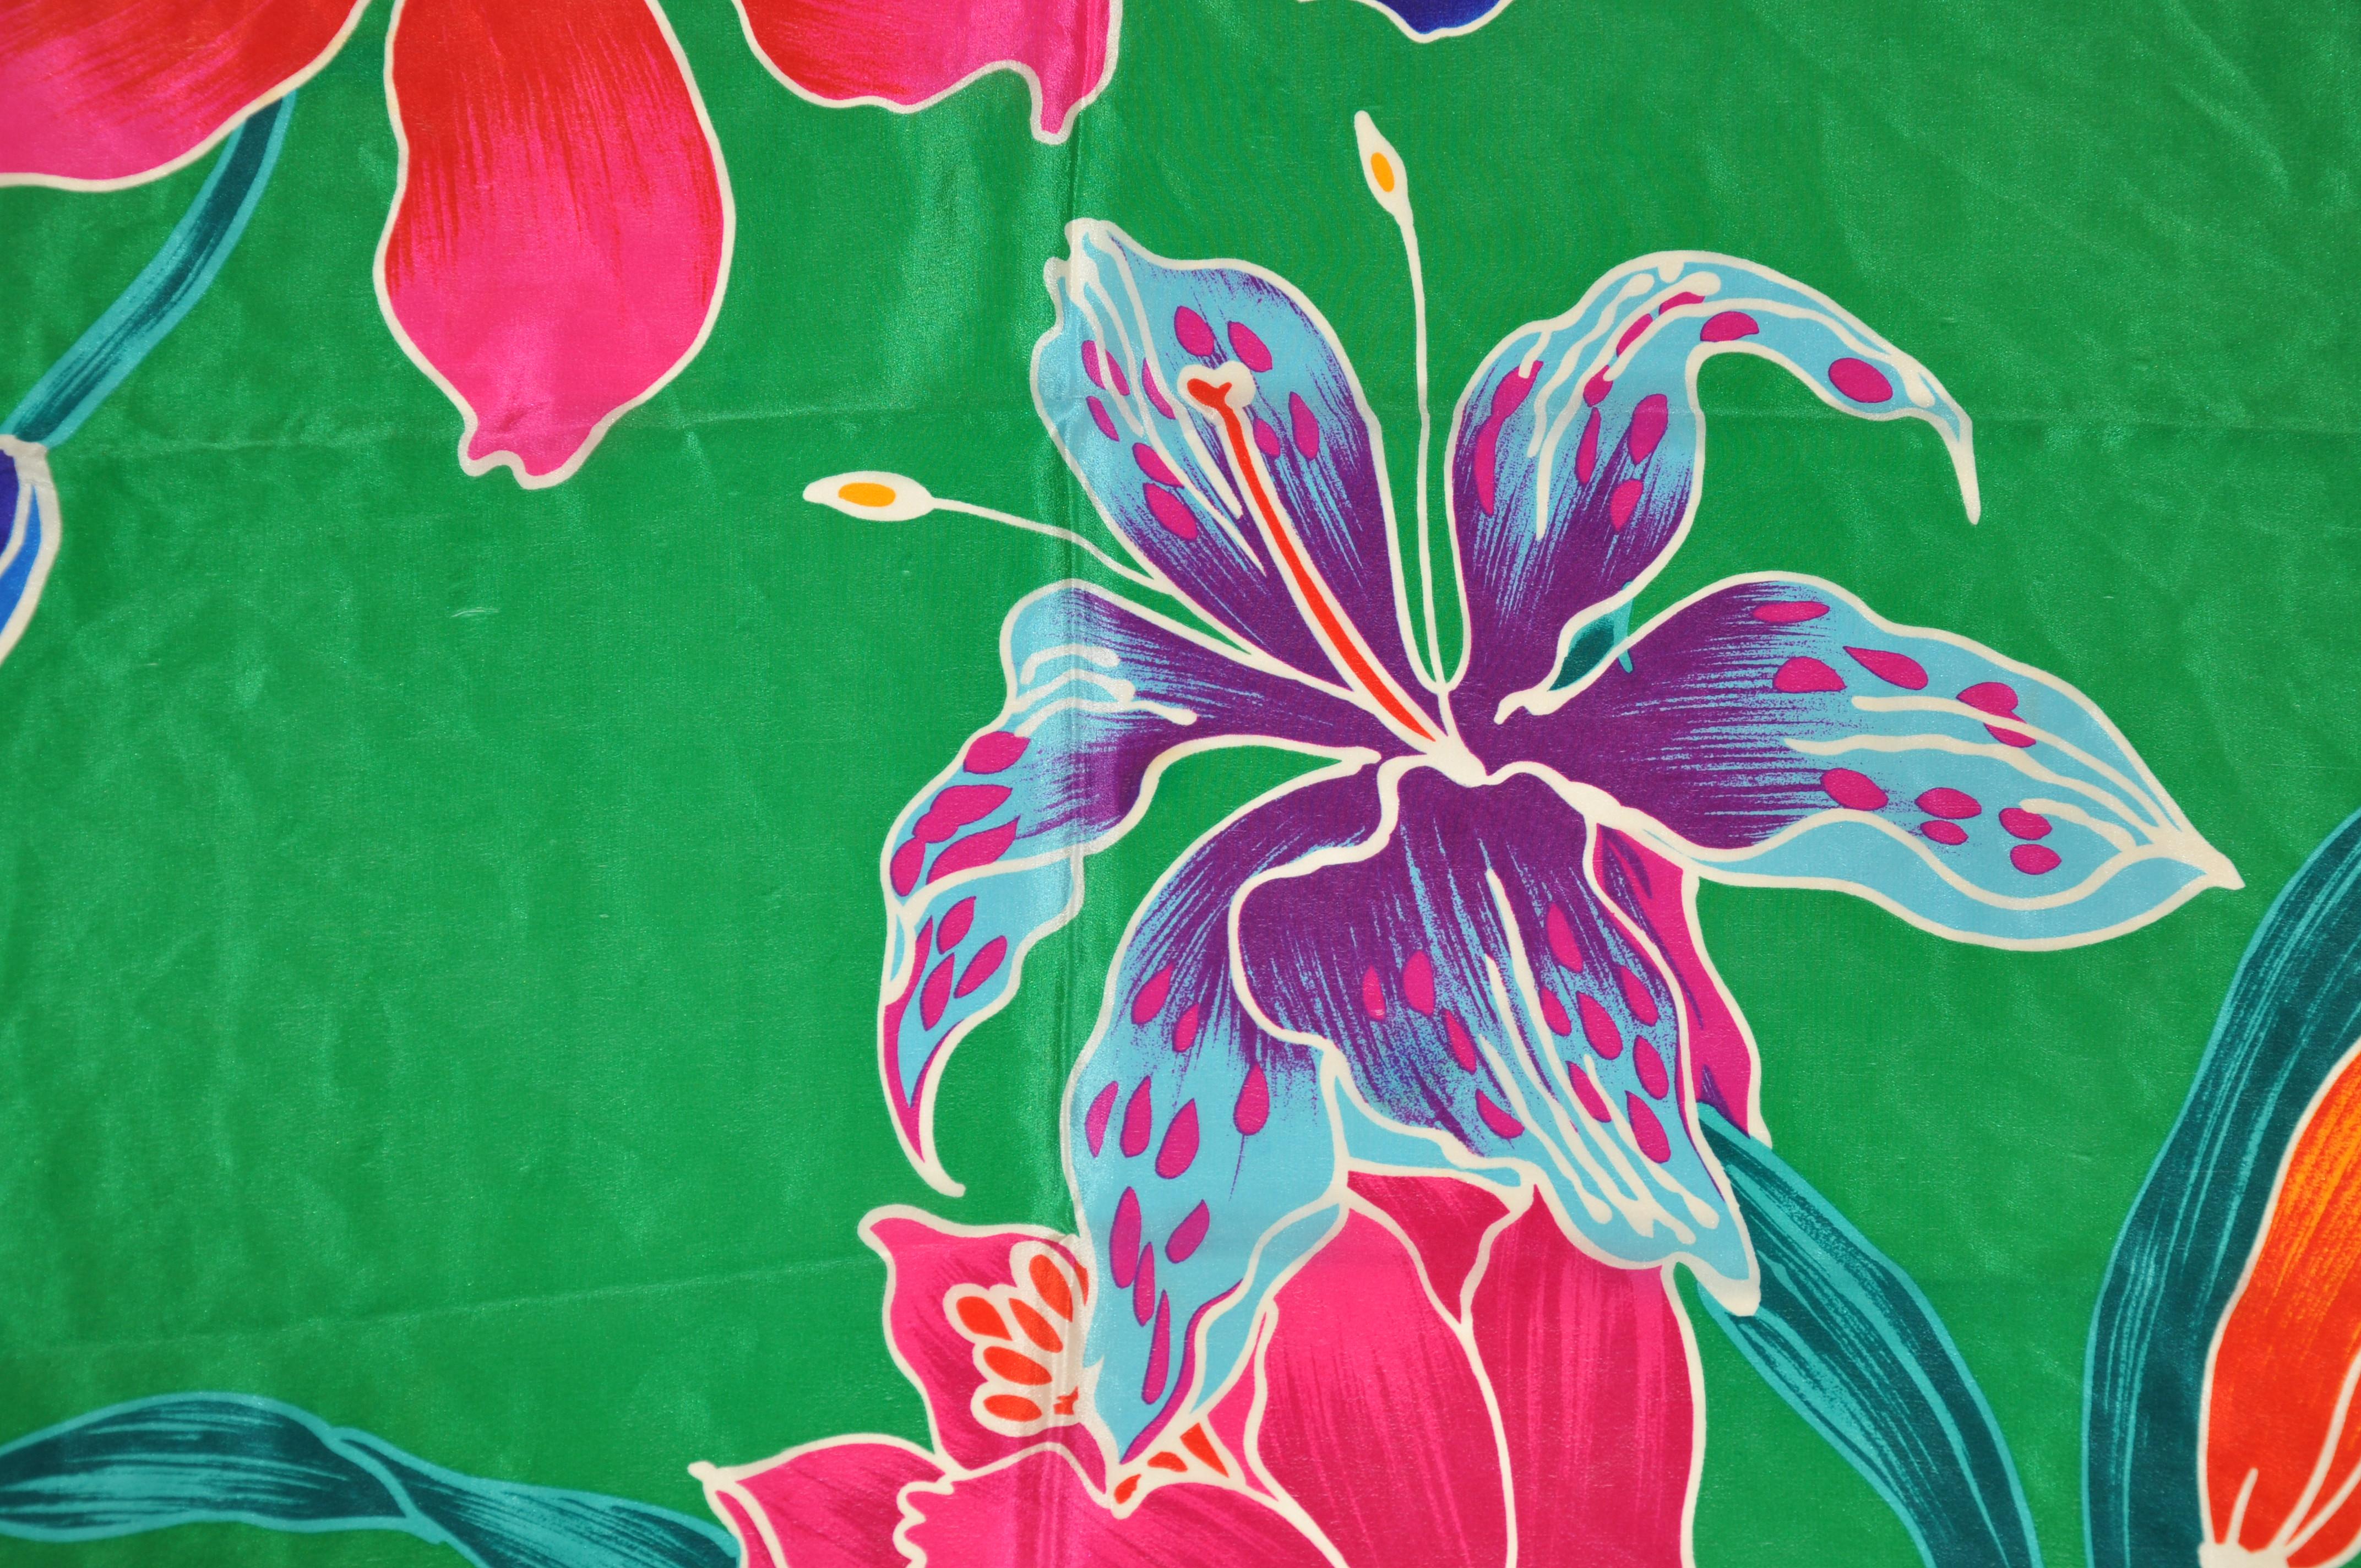      Ce foulard en soie aux couleurs vives et aux orchidées vertes mesure 30 pouces sur 30 pouces. Fabriqué au Japon.